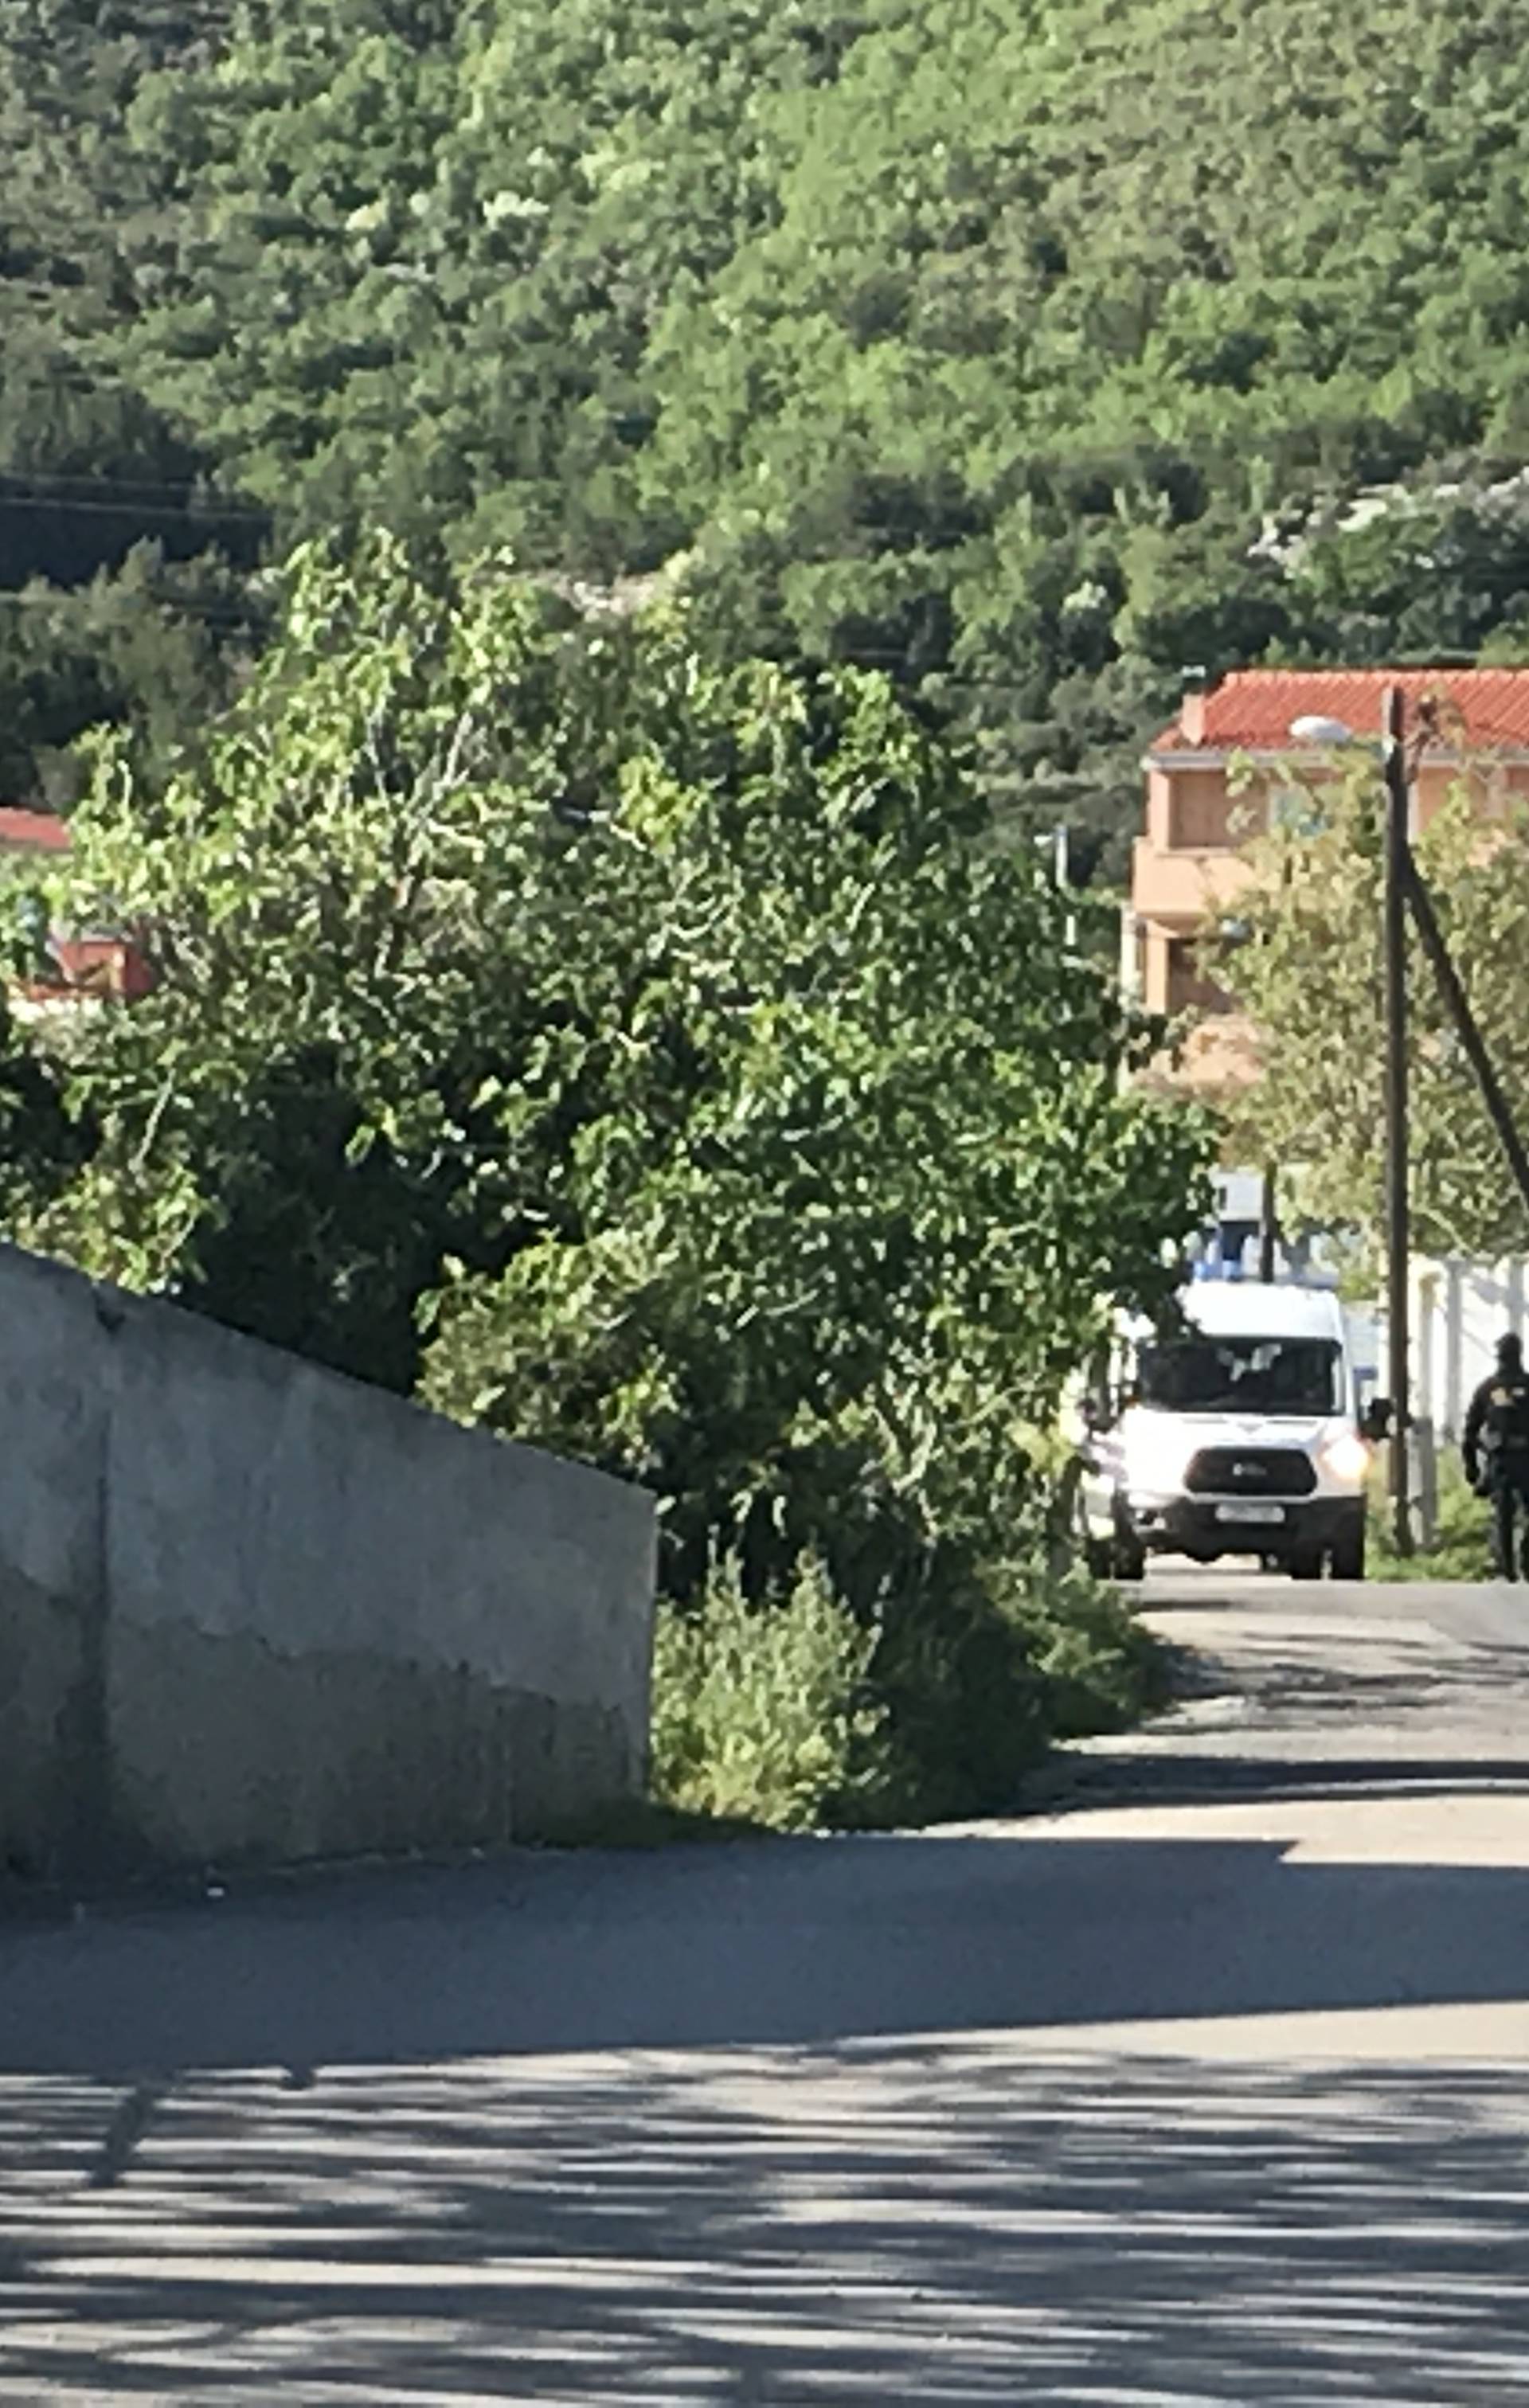 Predao se policiji: Muškarac je pucao u kući u Kaštel Sućurcu